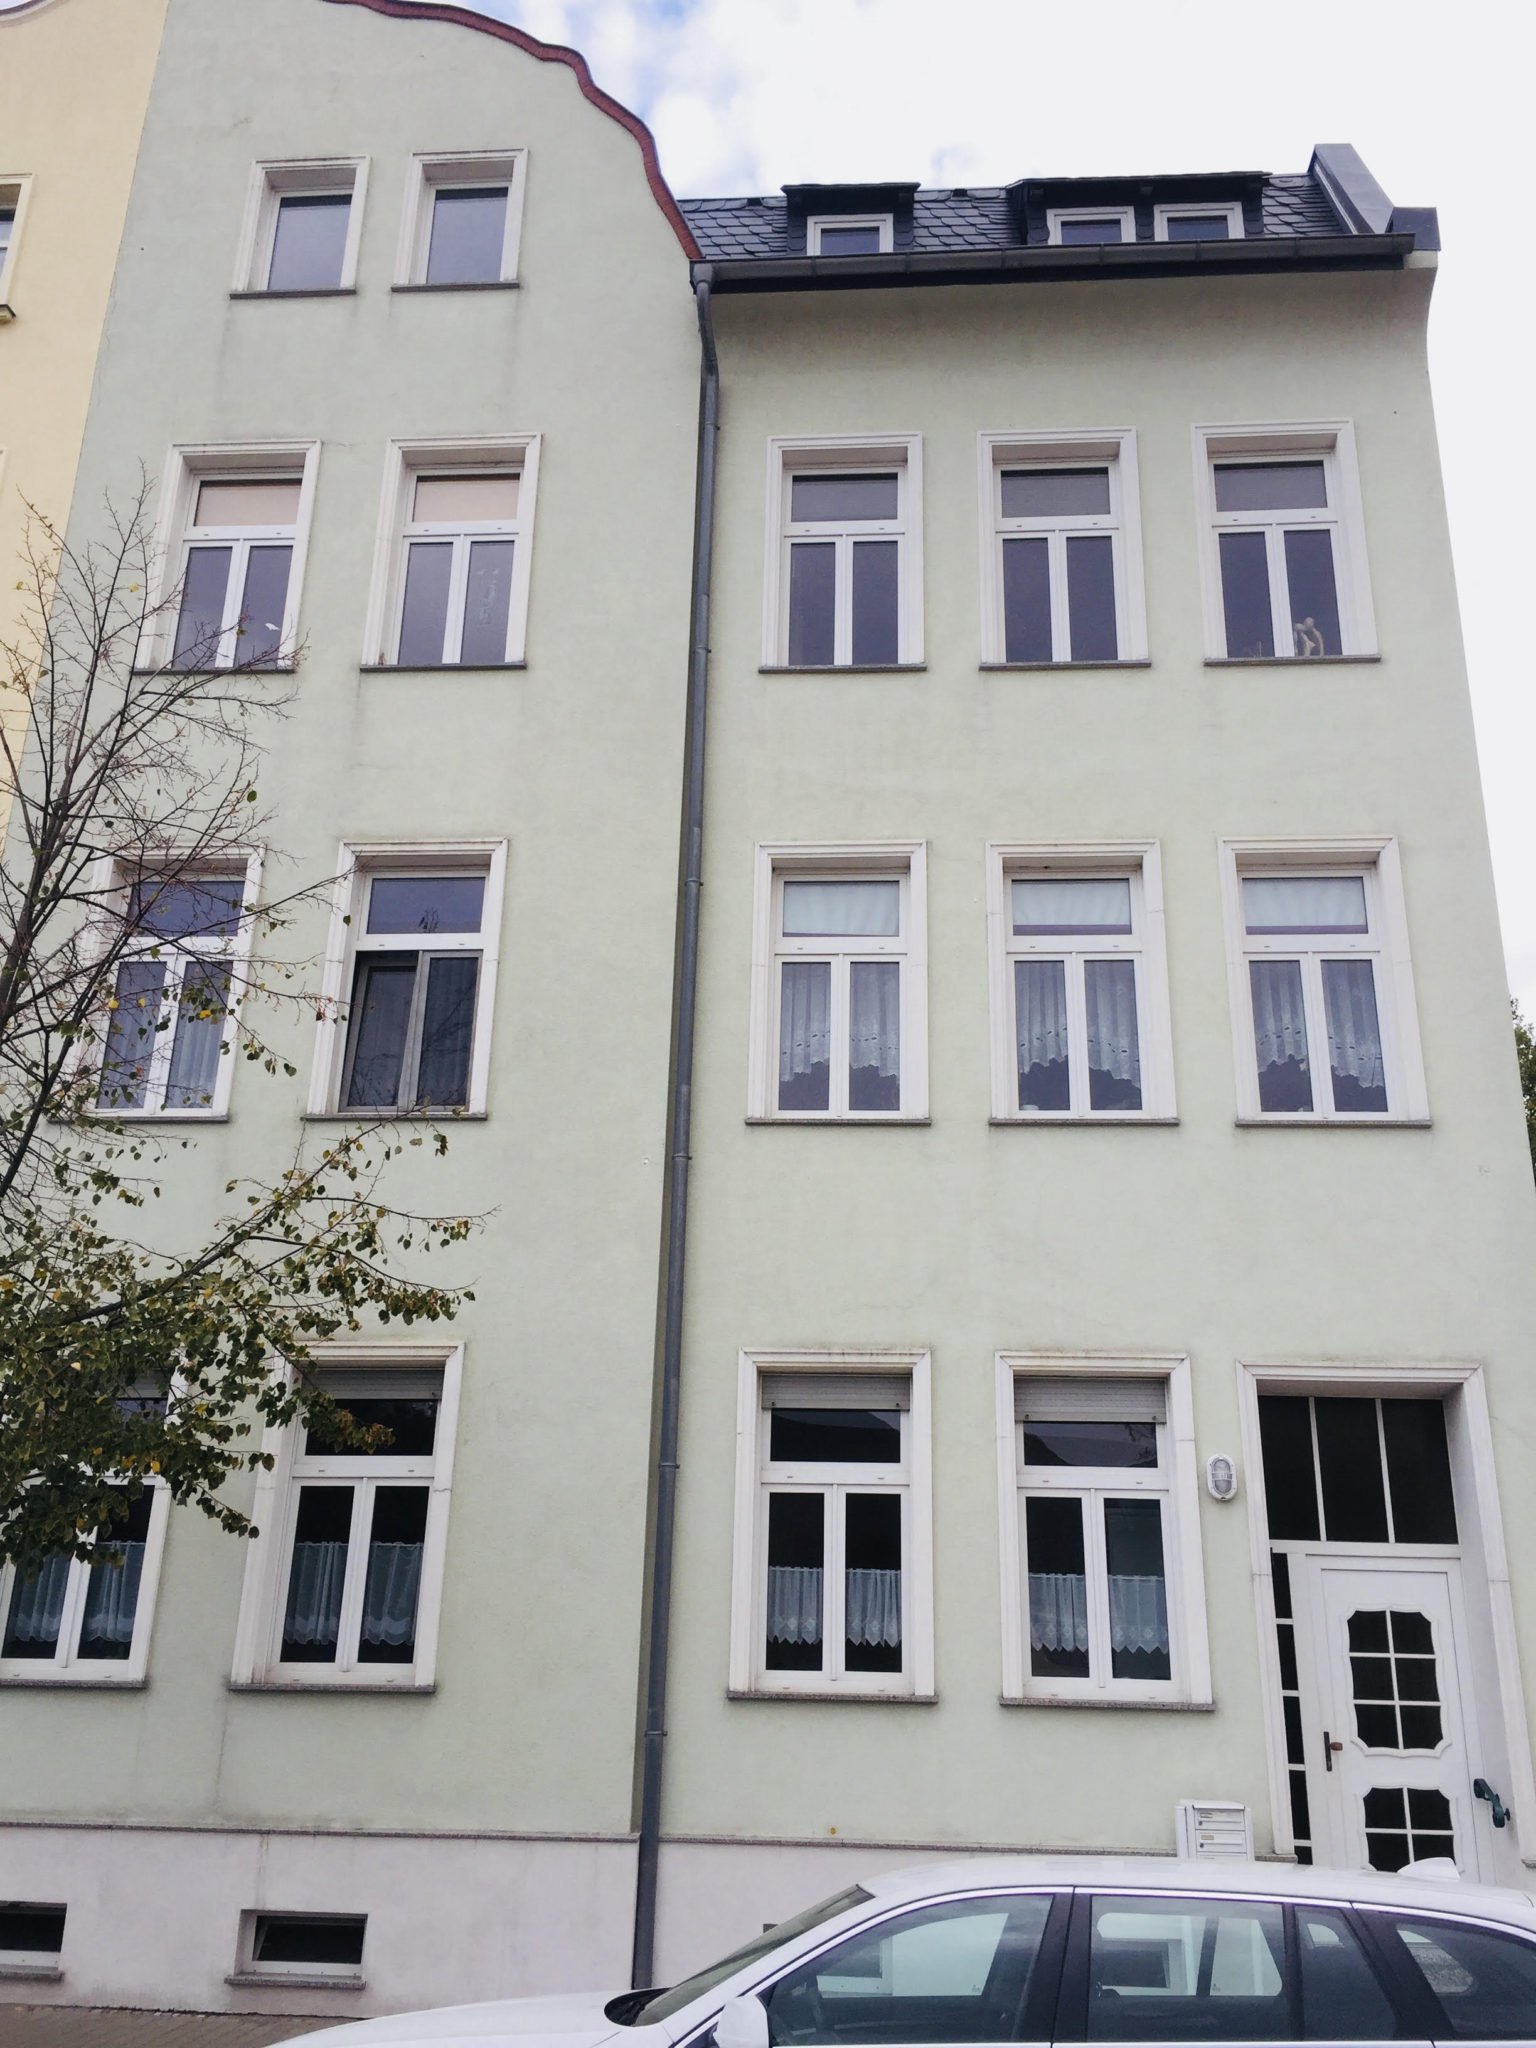 Mehrfamilienhaus mit vier Wohneinheiten in Sachsen-anhalt zur Erhöhung des Cashflows